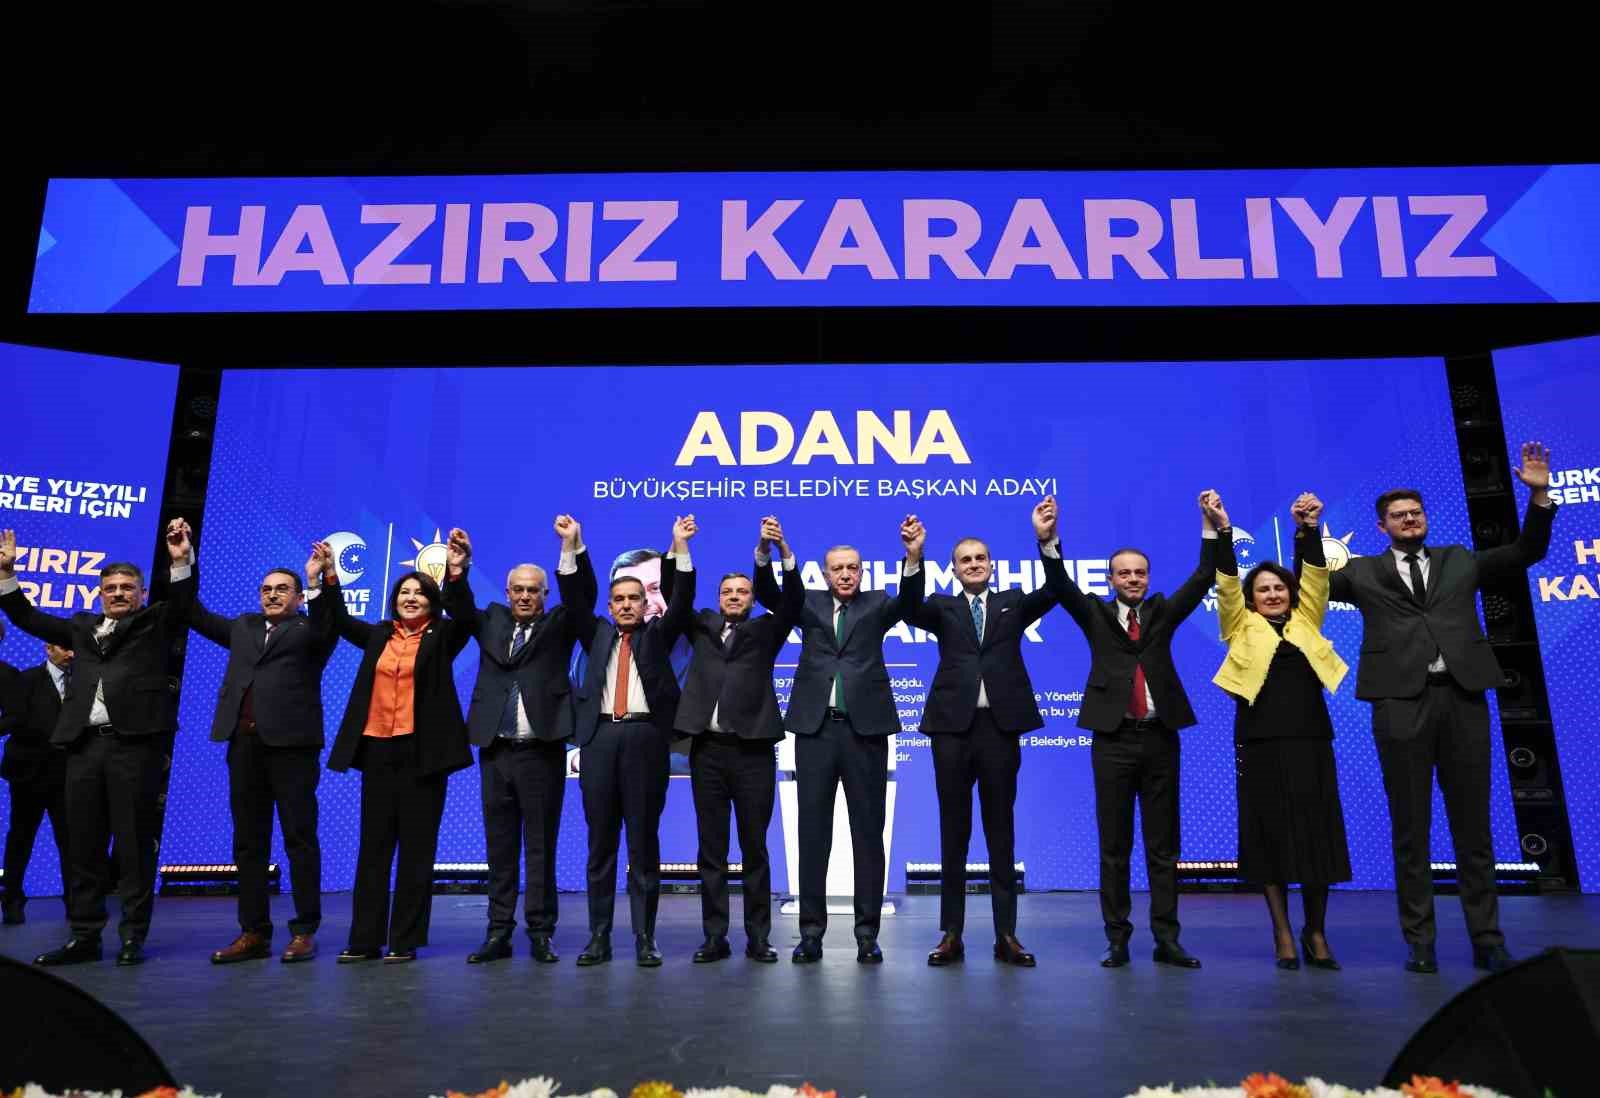 Fatih Mehmet Kocaispir AK Parti’nin Adana Büyükşehir Belediye Başkan Adayı olarak belirlendi!